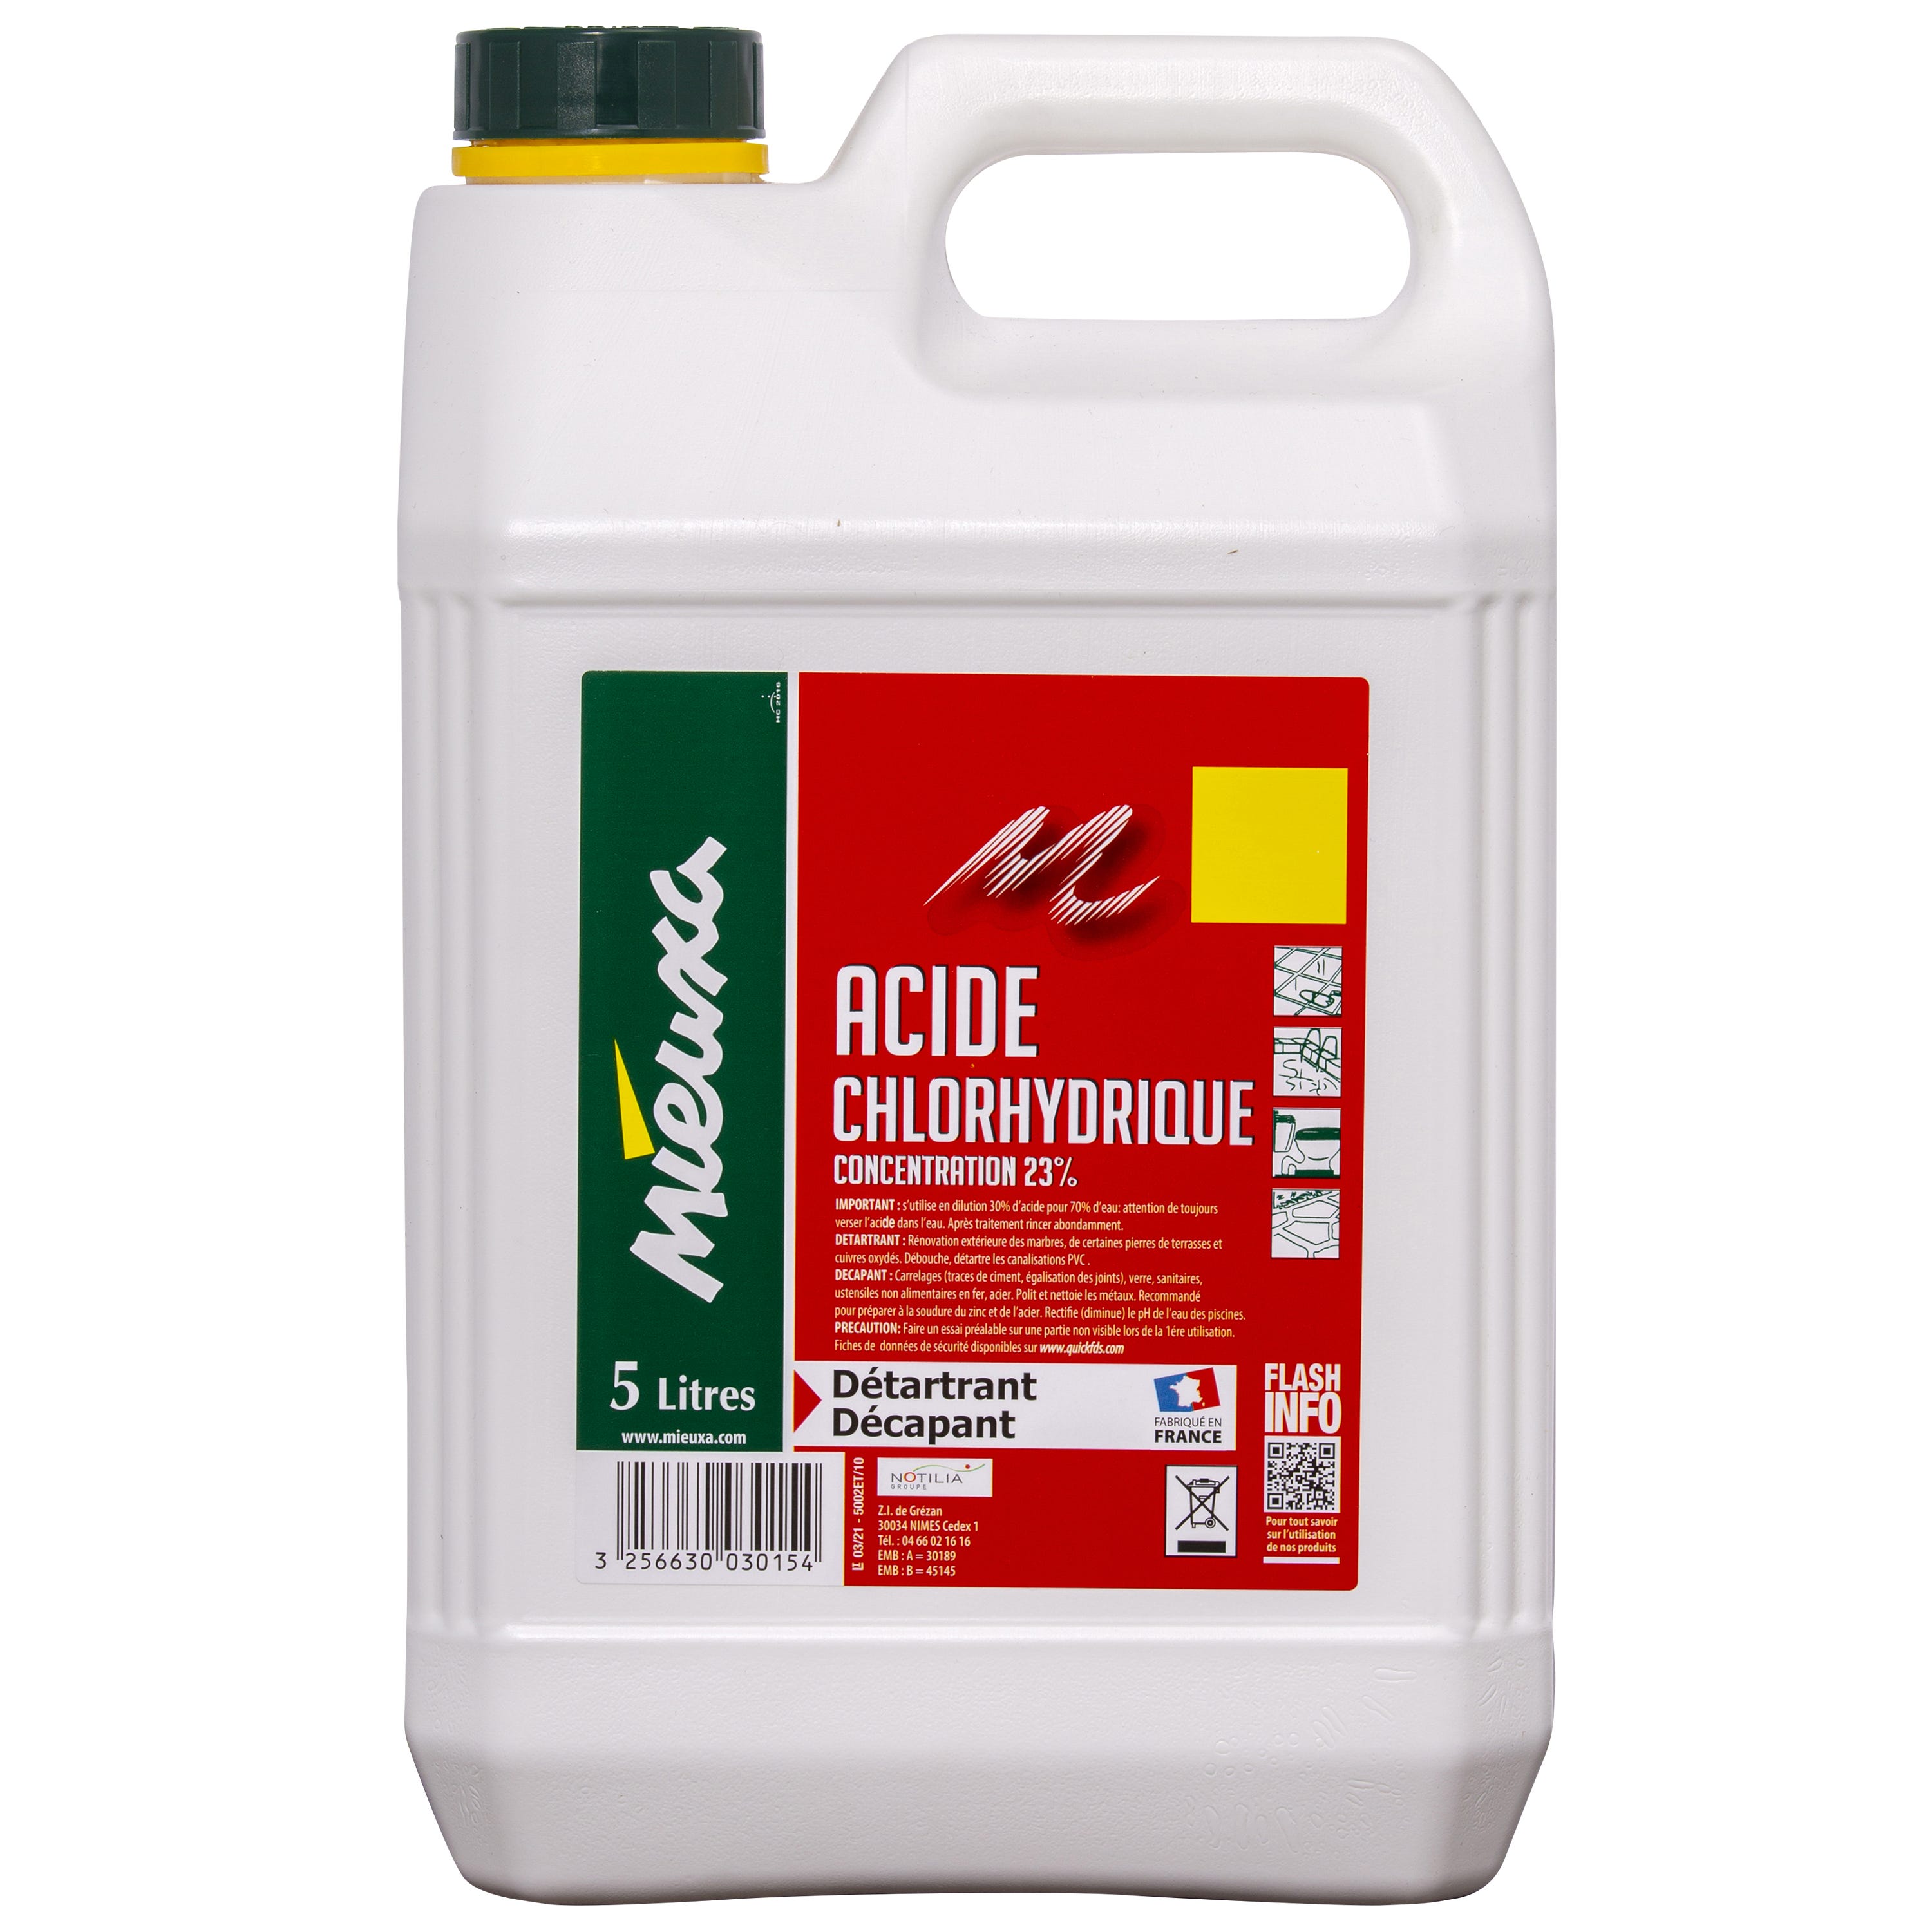 ARDEA - Acide chlorhydrique 23% bidon de 5 litres